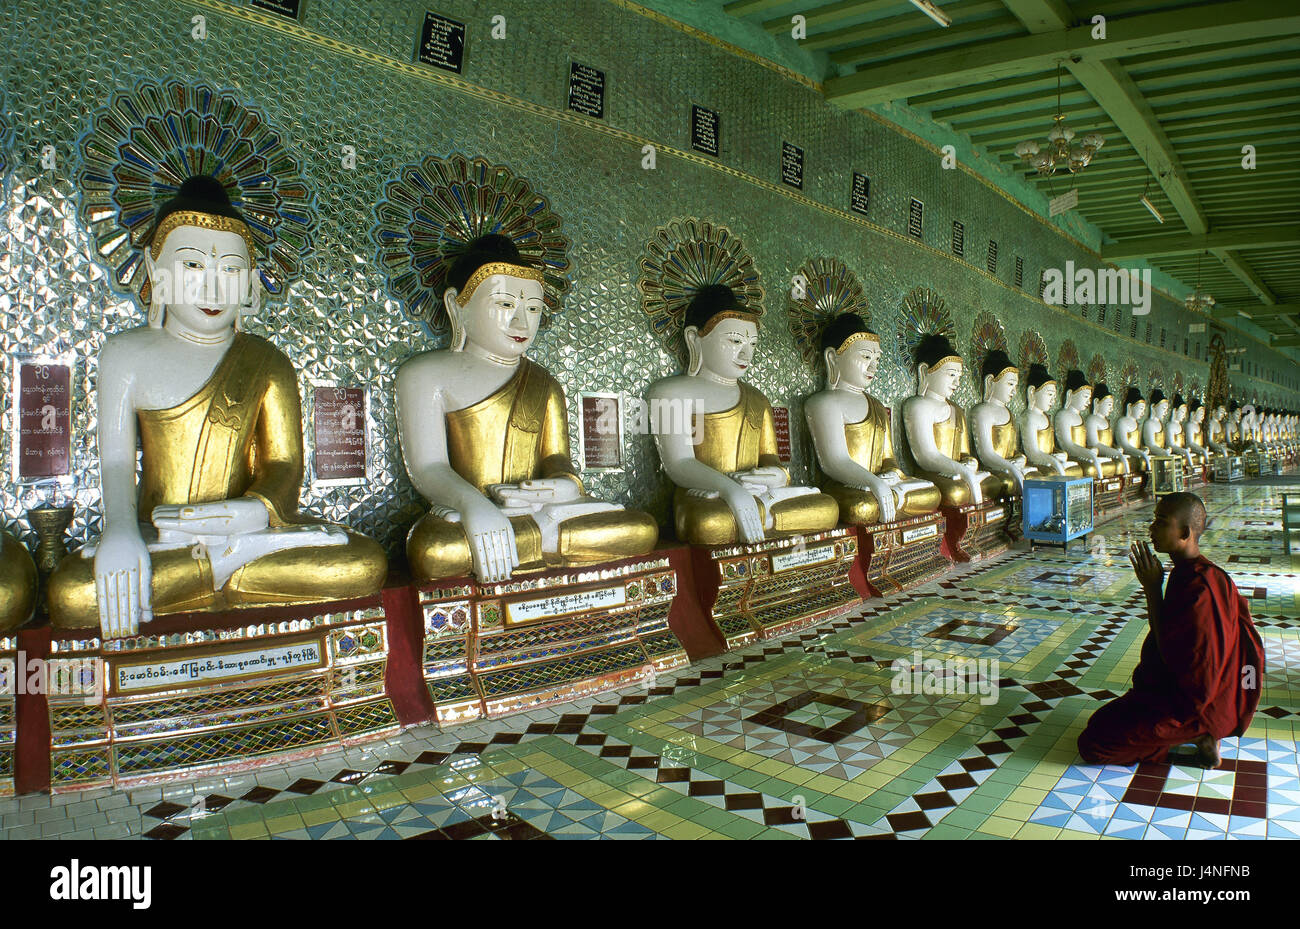 Myanmar Yangon, Shwedagon pagoda, all'interno, statue, monaco, recitare, Asia del sud-est asiatico, Birmania, a pagoda, tempio, Shwedagon Paya, luogo di interesse, Buddha-Statuen, Buddha, caratteri, all'interno, l'uomo, di preghiera, di credente, inginocchiarsi, religione, fede, buddismo buddisti, Foto Stock